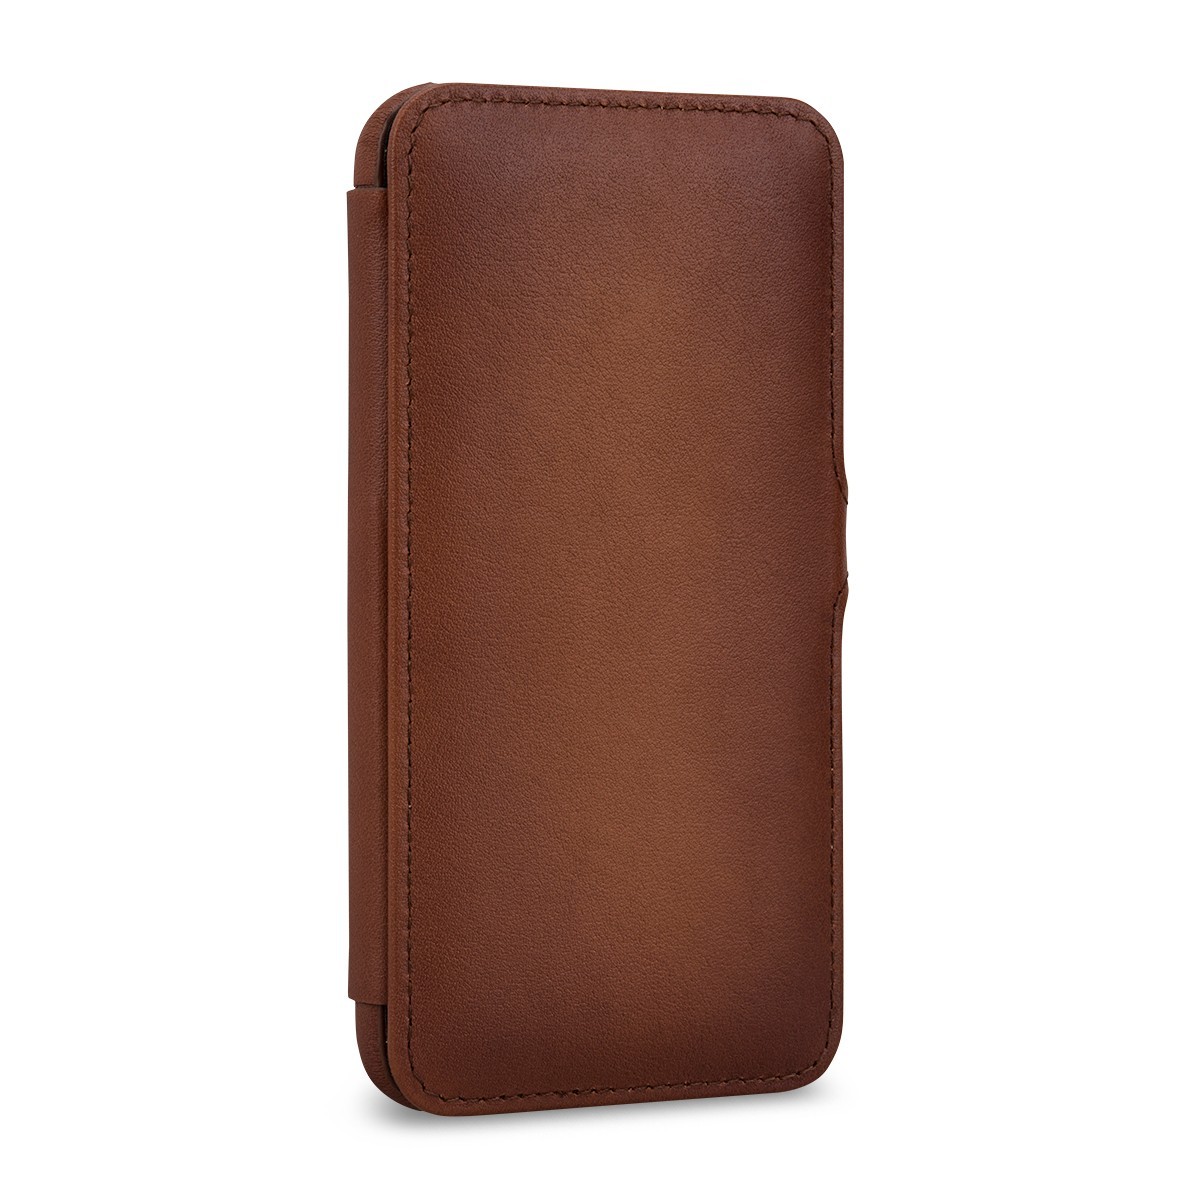 Etui compatible iPhone 11 Pro book type marron en cuir véritable - Stilgut